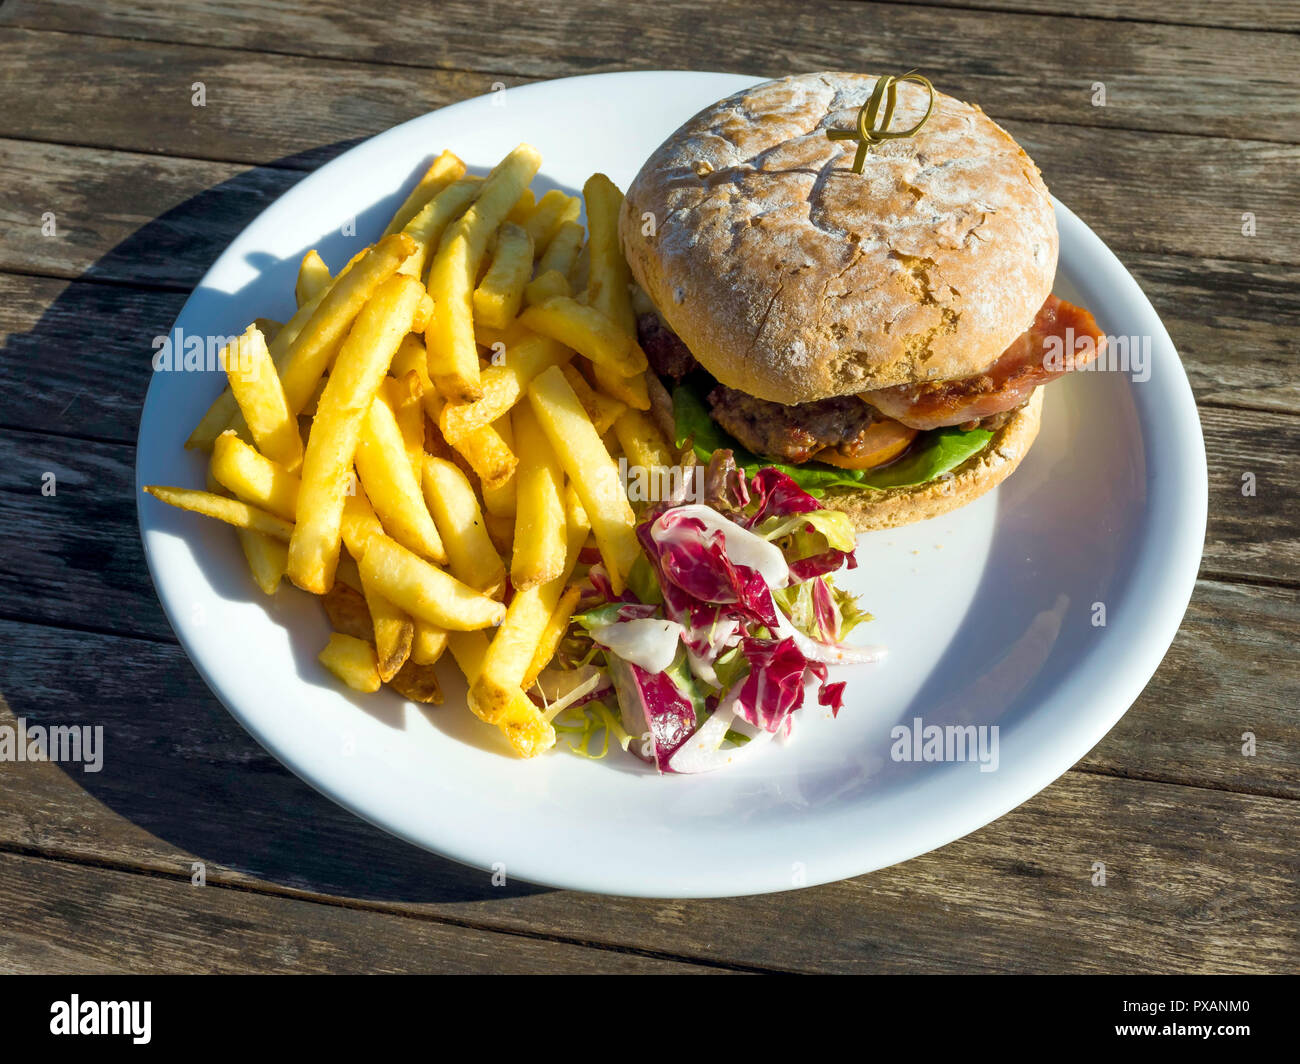 Cafe pranzo un primo hamburger di manzo con formaggio pancetta patate fritte e insalata mista Foto Stock